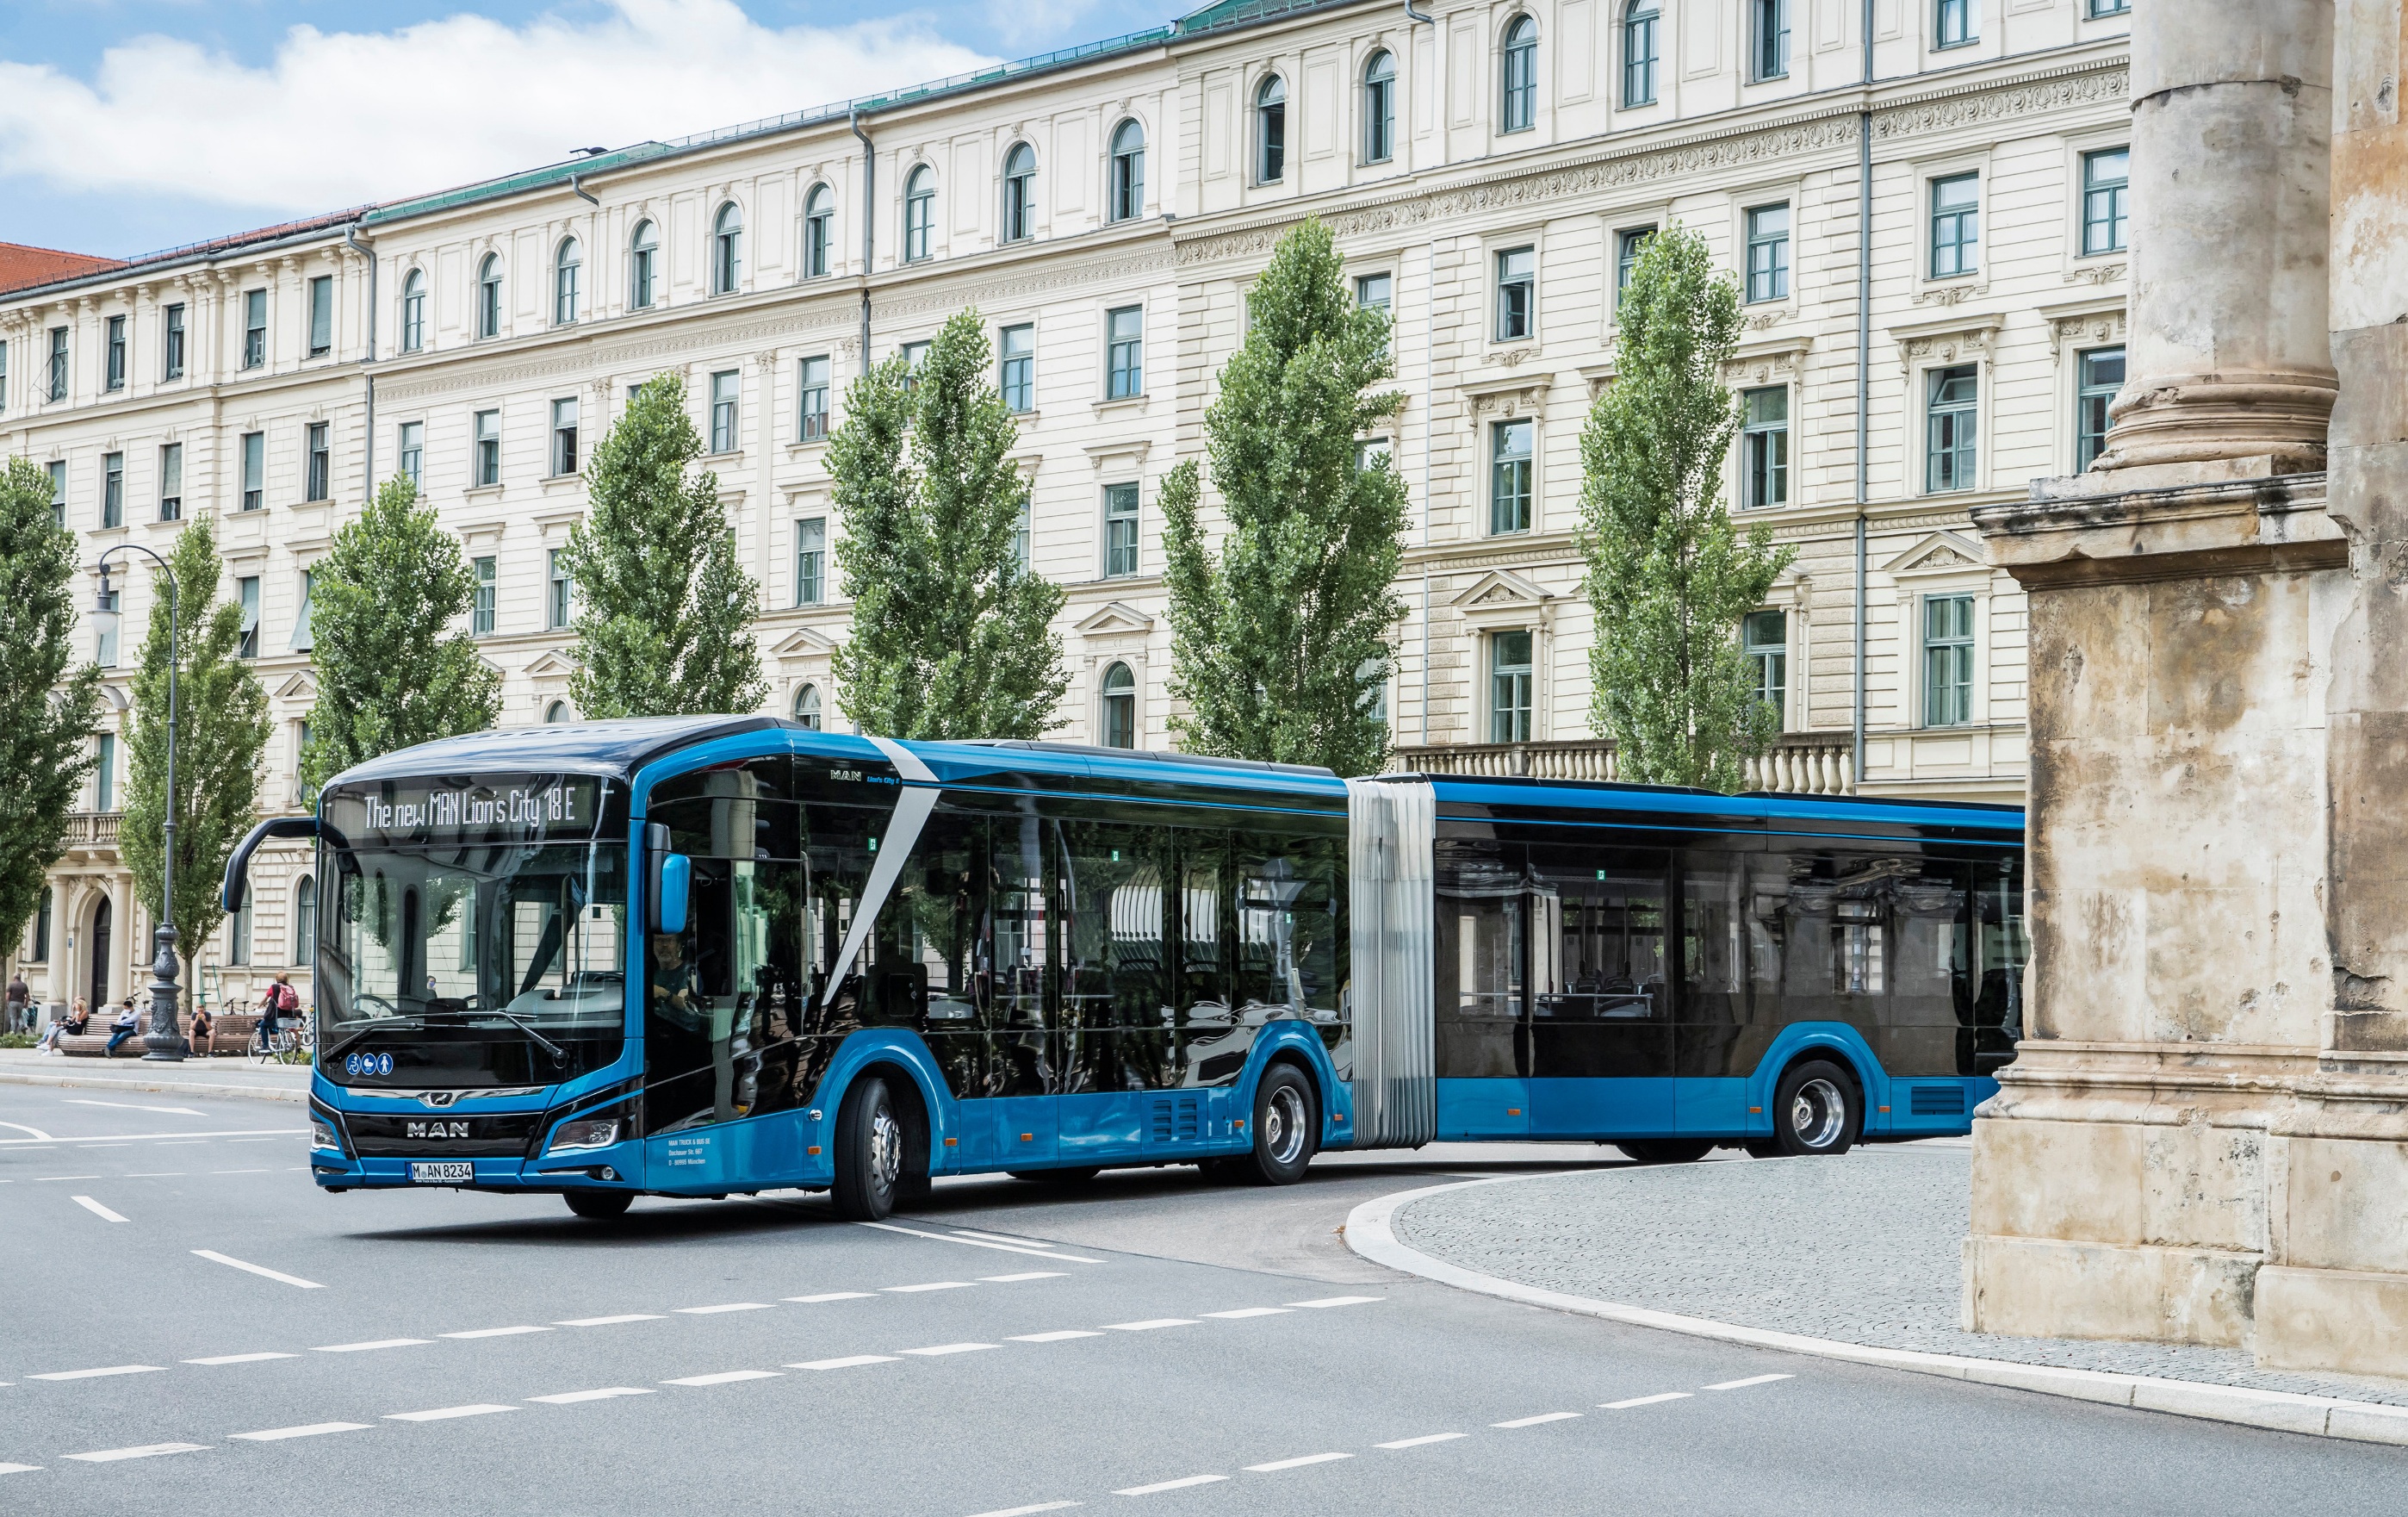 A nullemissziós buszok vásárlásának kötelezővé tételét kéri 11 európai város az EU-tól